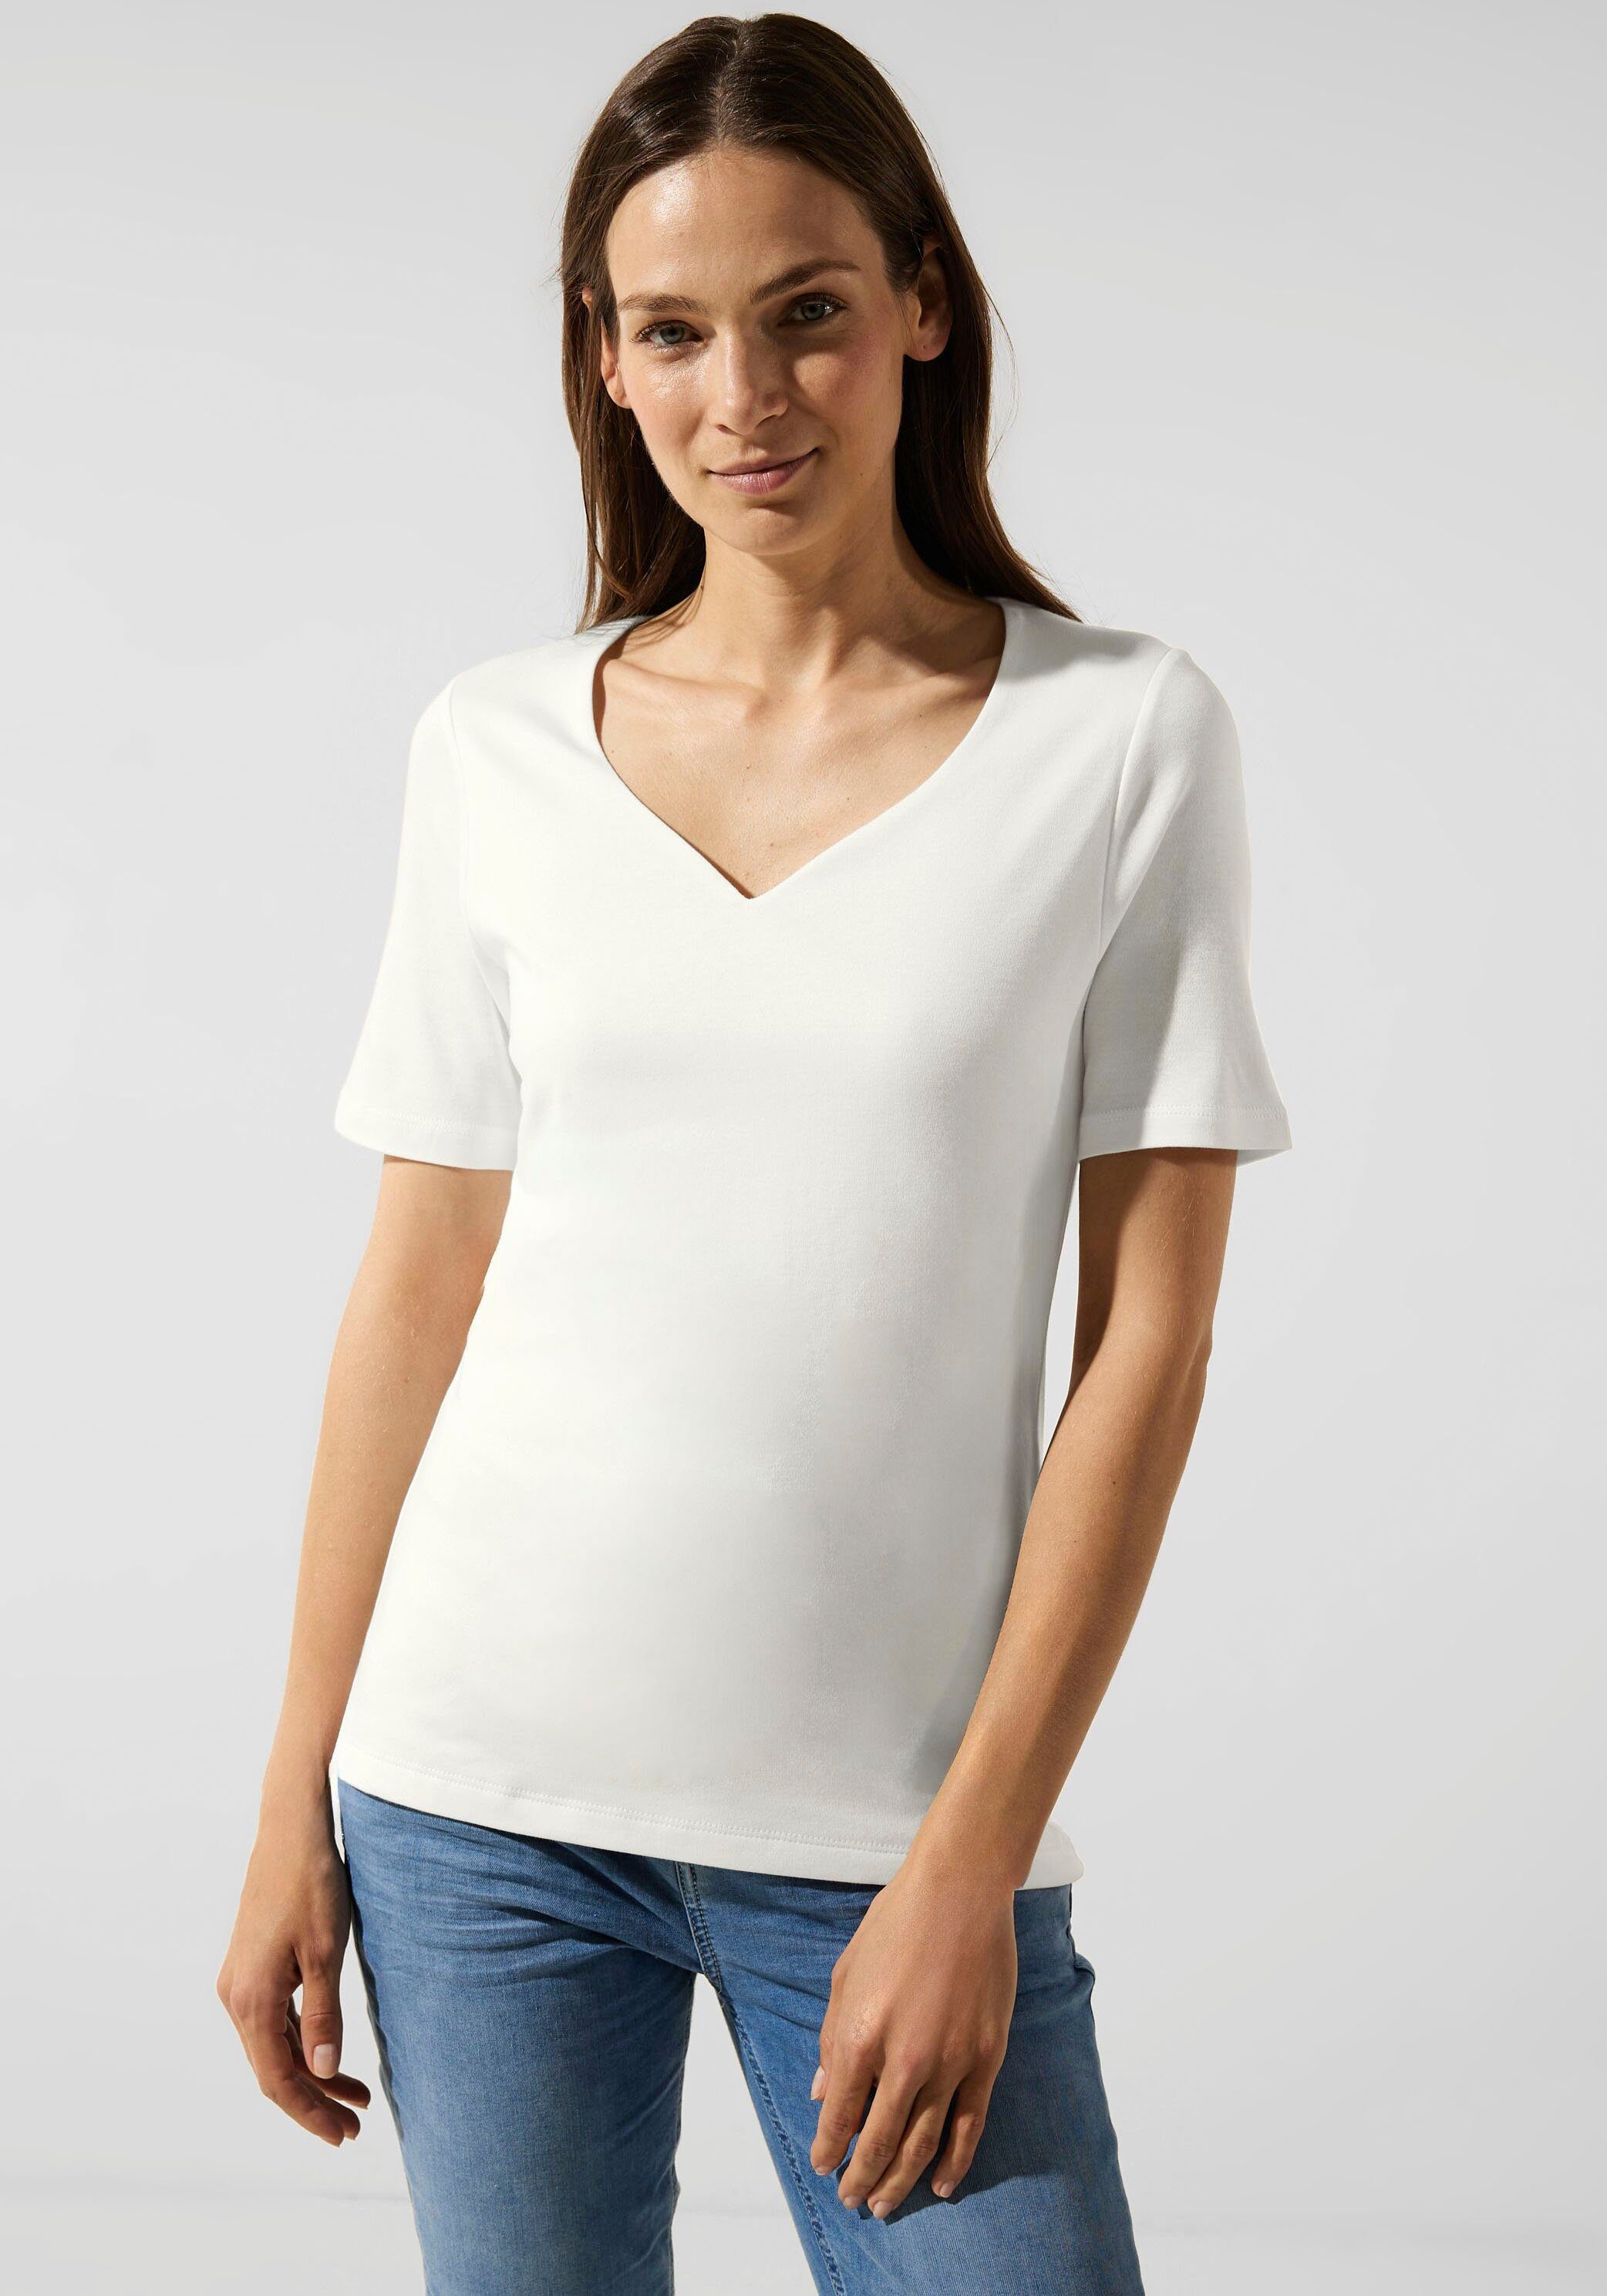 ONE off Herz-Ausschnitt STREET T-Shirt mit white